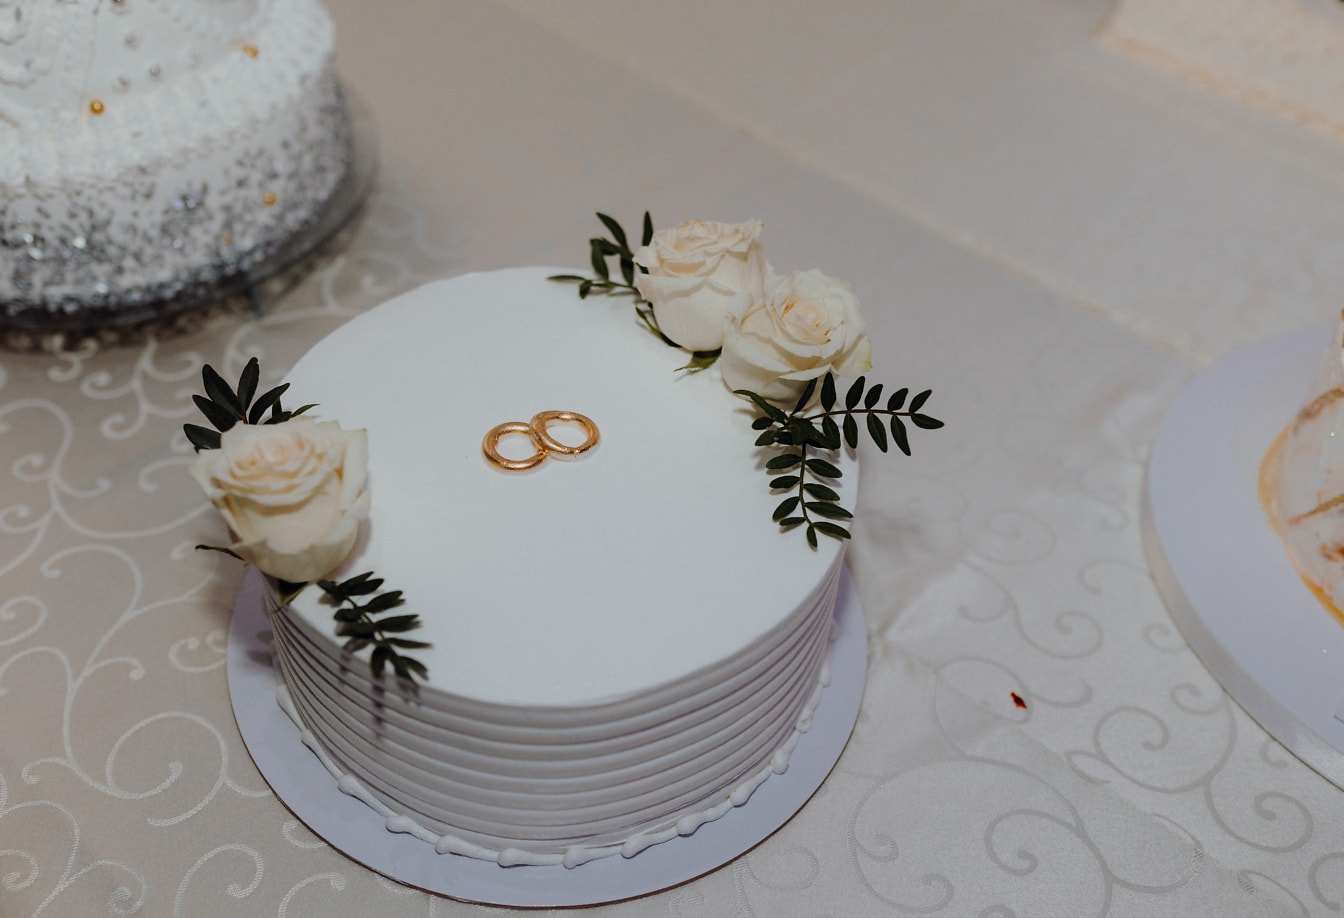 Білий весільний торт із золотими обручками зверху та білими трояндами як прикраса